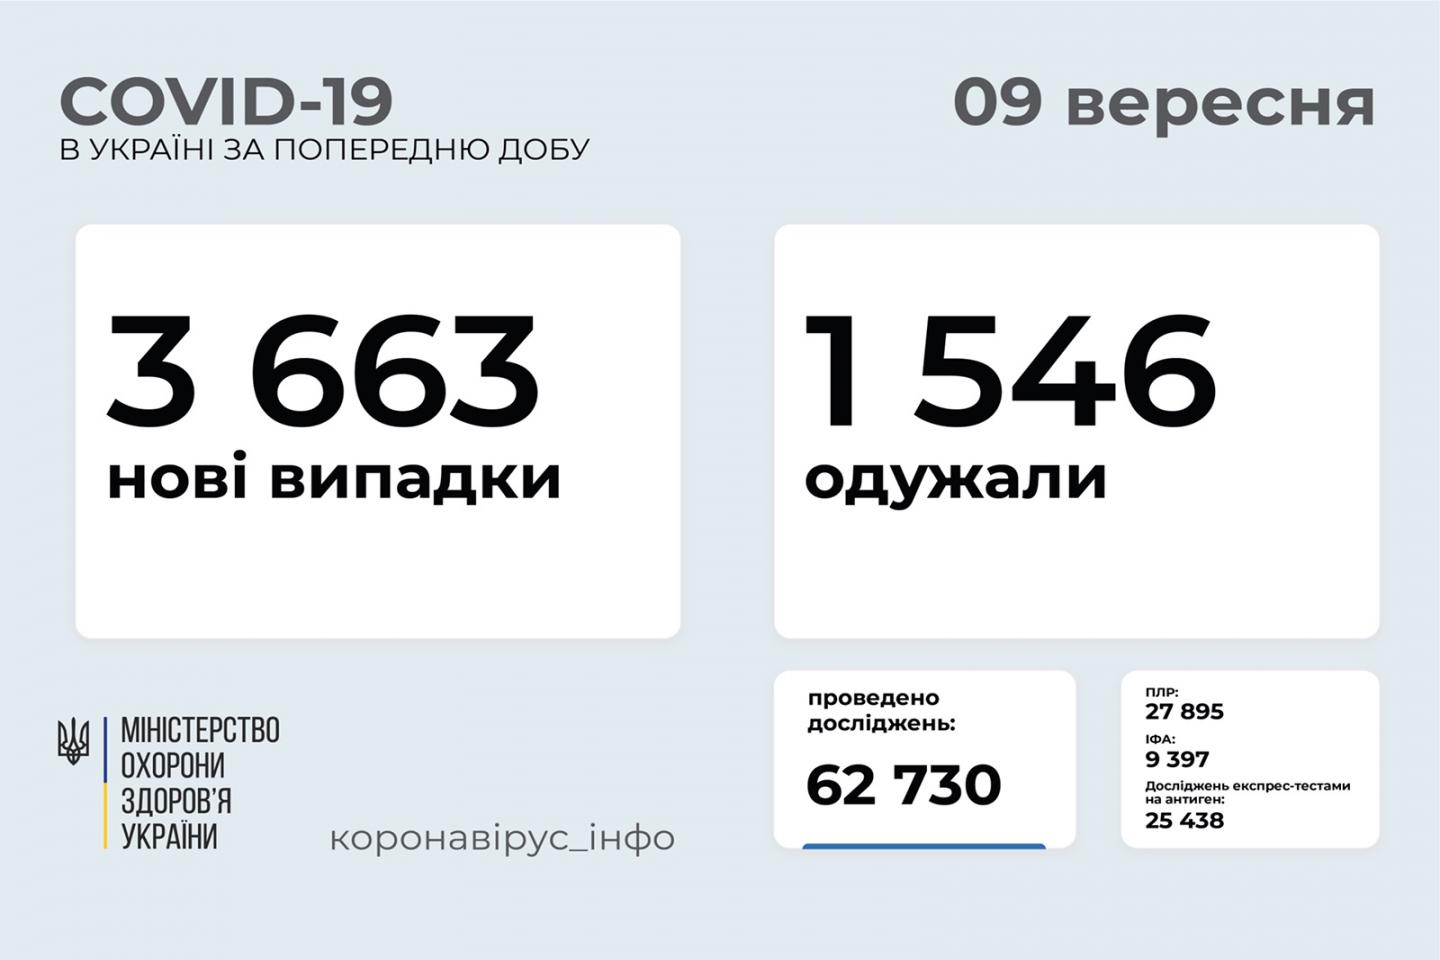 http://dunrada.gov.ua/uploadfile/archive_news/2021/09/09/2021-09-09_1511/images/images-79362.jpg